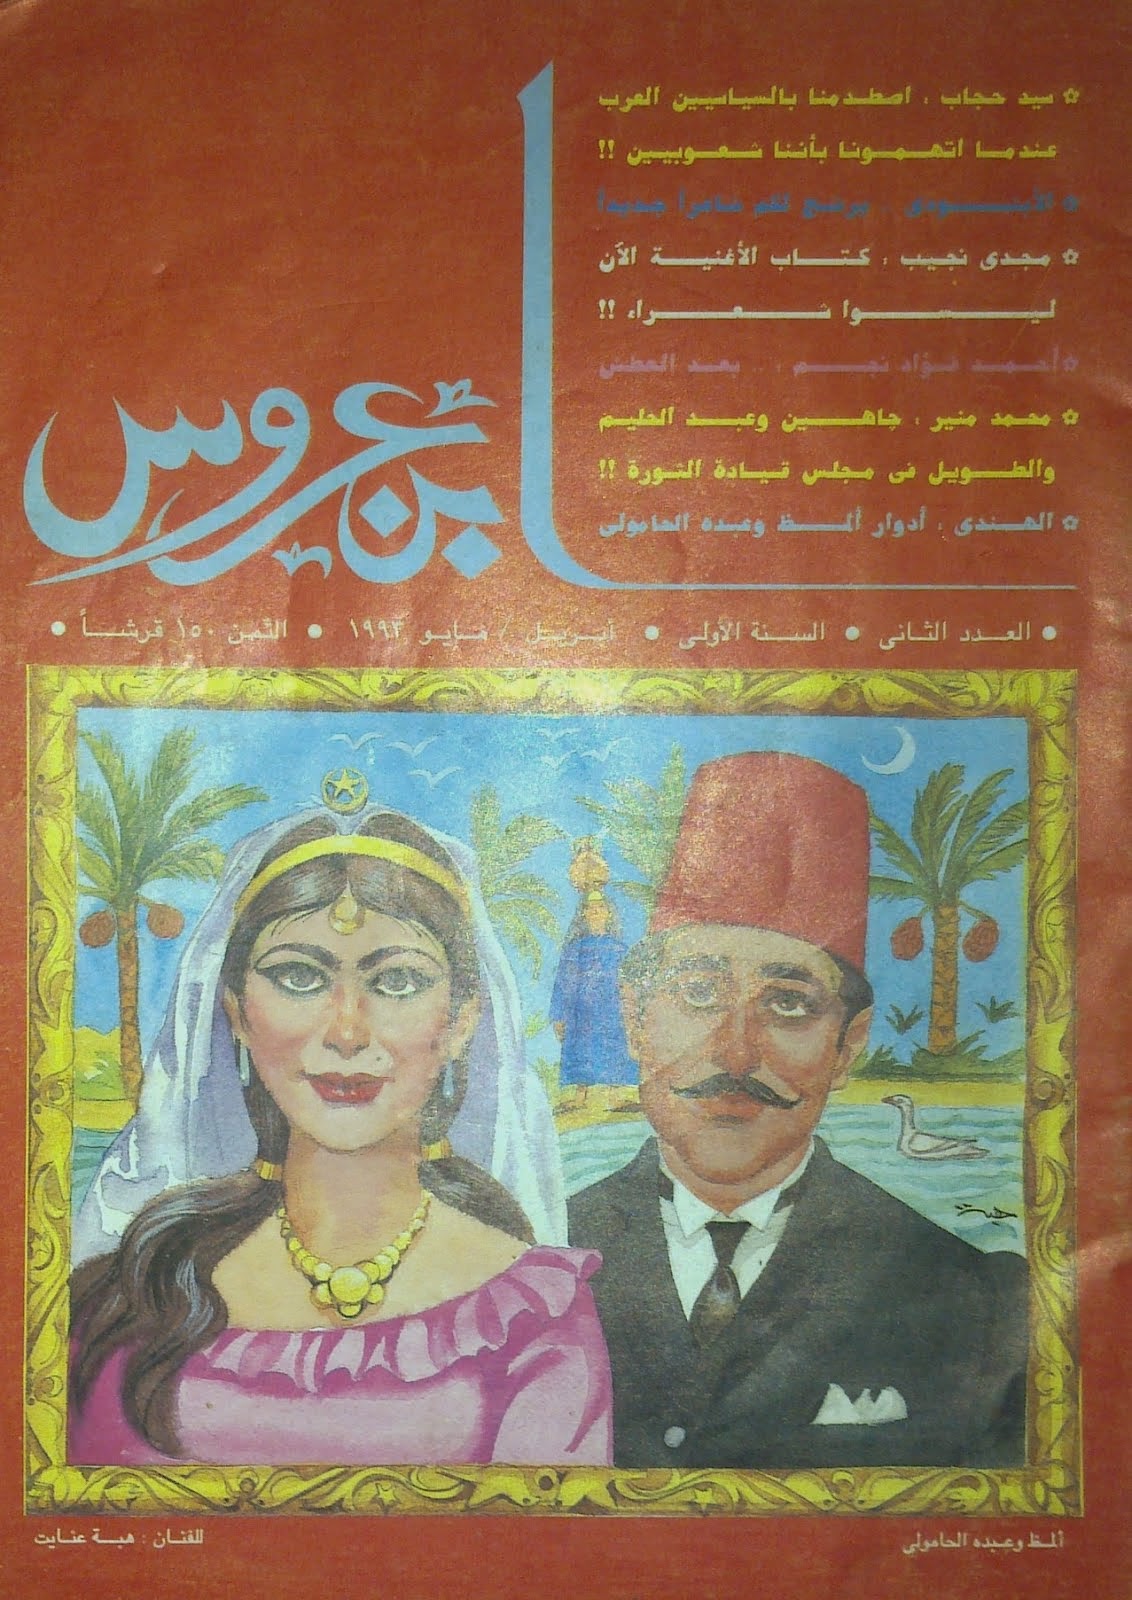 غلاف العدد الثاني من مجلة ابن عروس